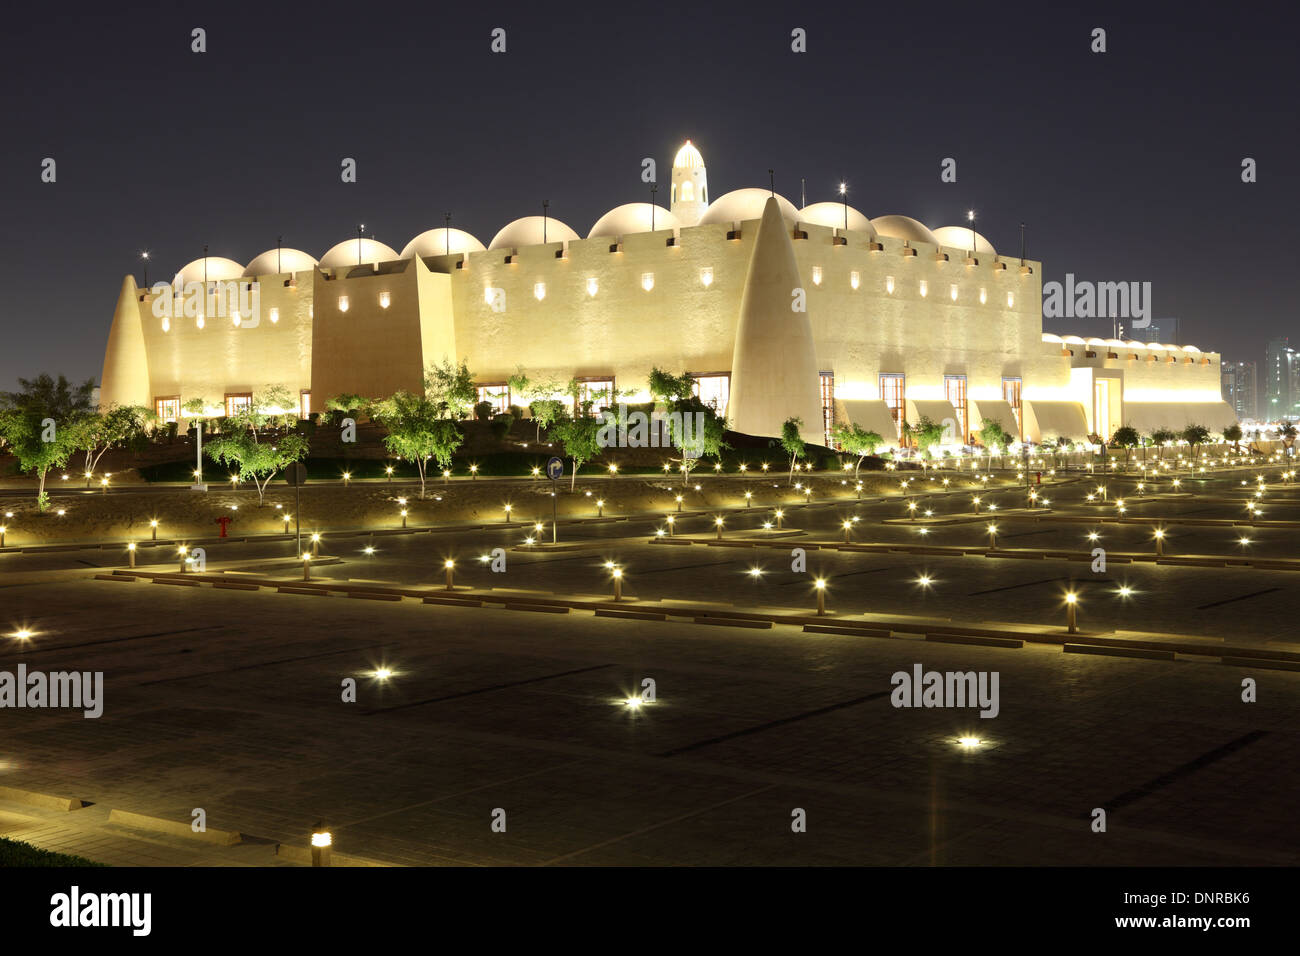 Mosquée Abdul Wahhab illuminée la nuit. Doha, Qatar Banque D'Images